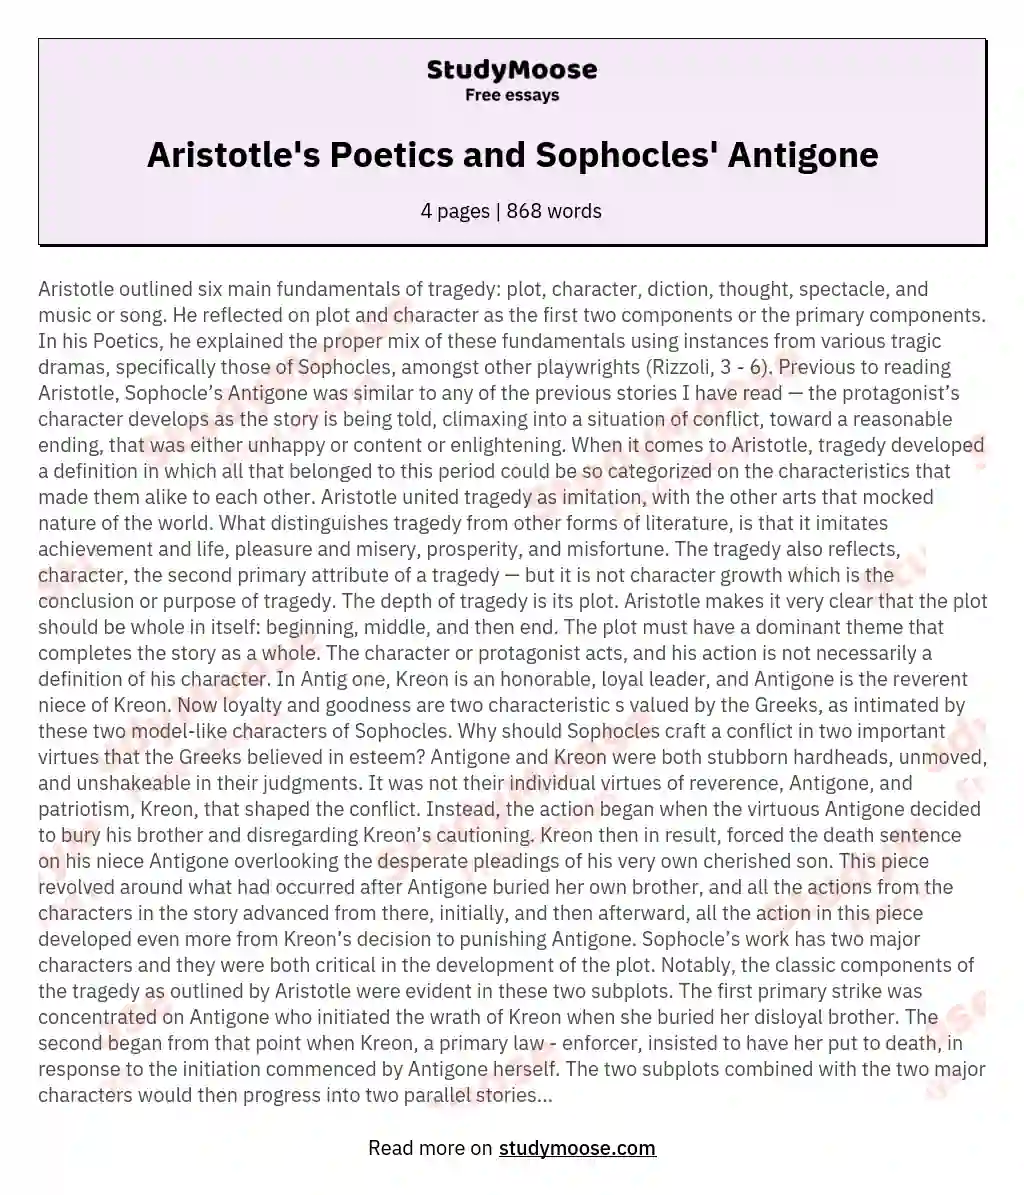 Aristotle's Poetics and Sophocles' Antigone